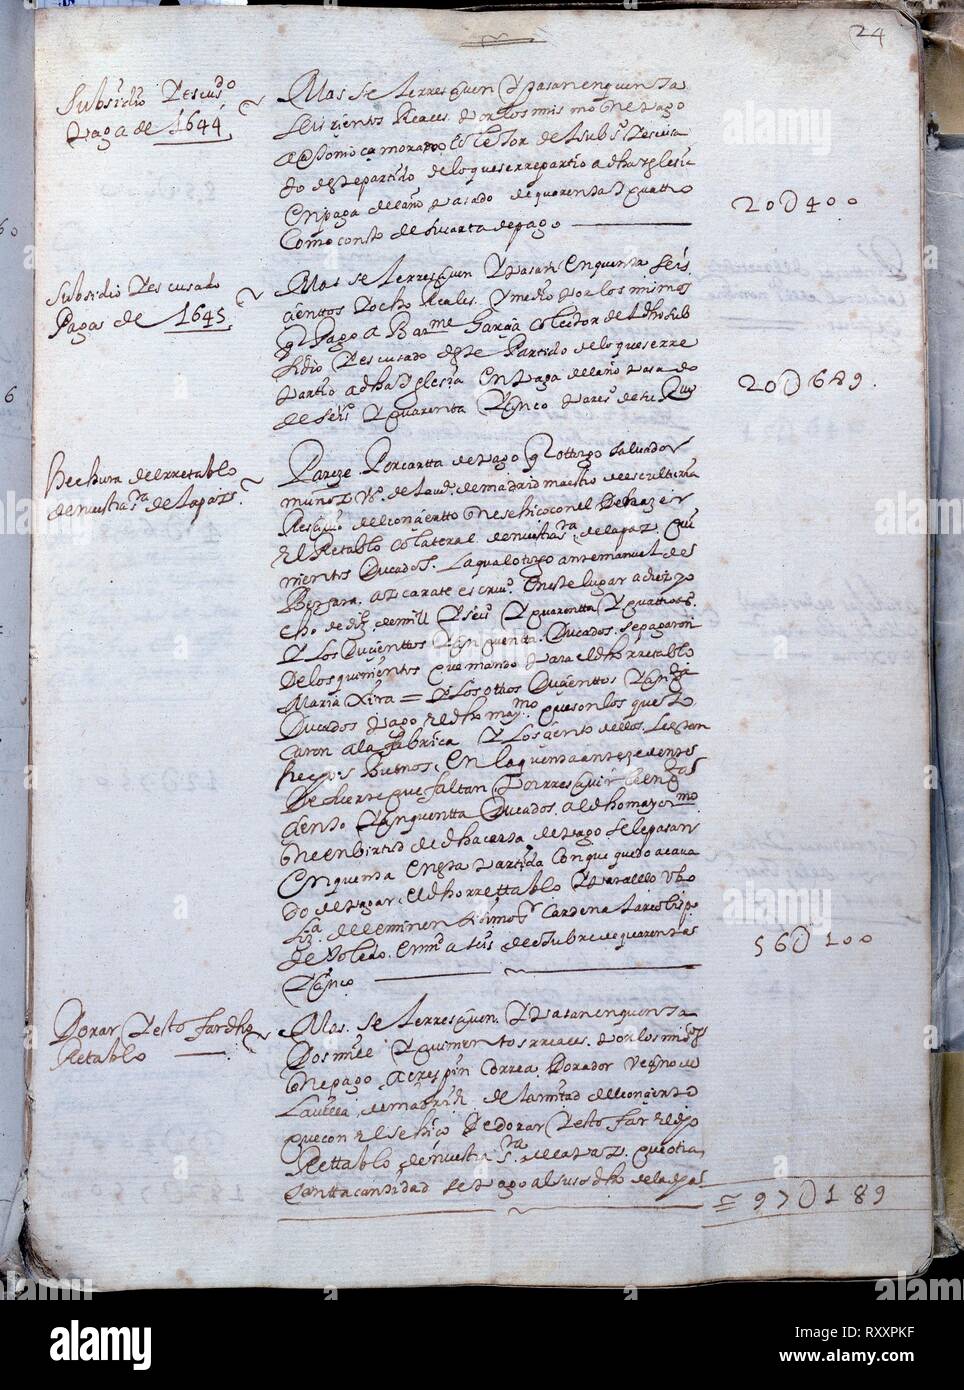 LIBRO DE FABRICA - CUENTAS DE LA CATEDRAL DE GETAFE - Nº4 - FOLIO 24R - AÑOS 1644 A 1692. Location: ARCHIVO HISTORICO DIOCESANO. GETAFE. MADRID. SPAIN. Stock Photo